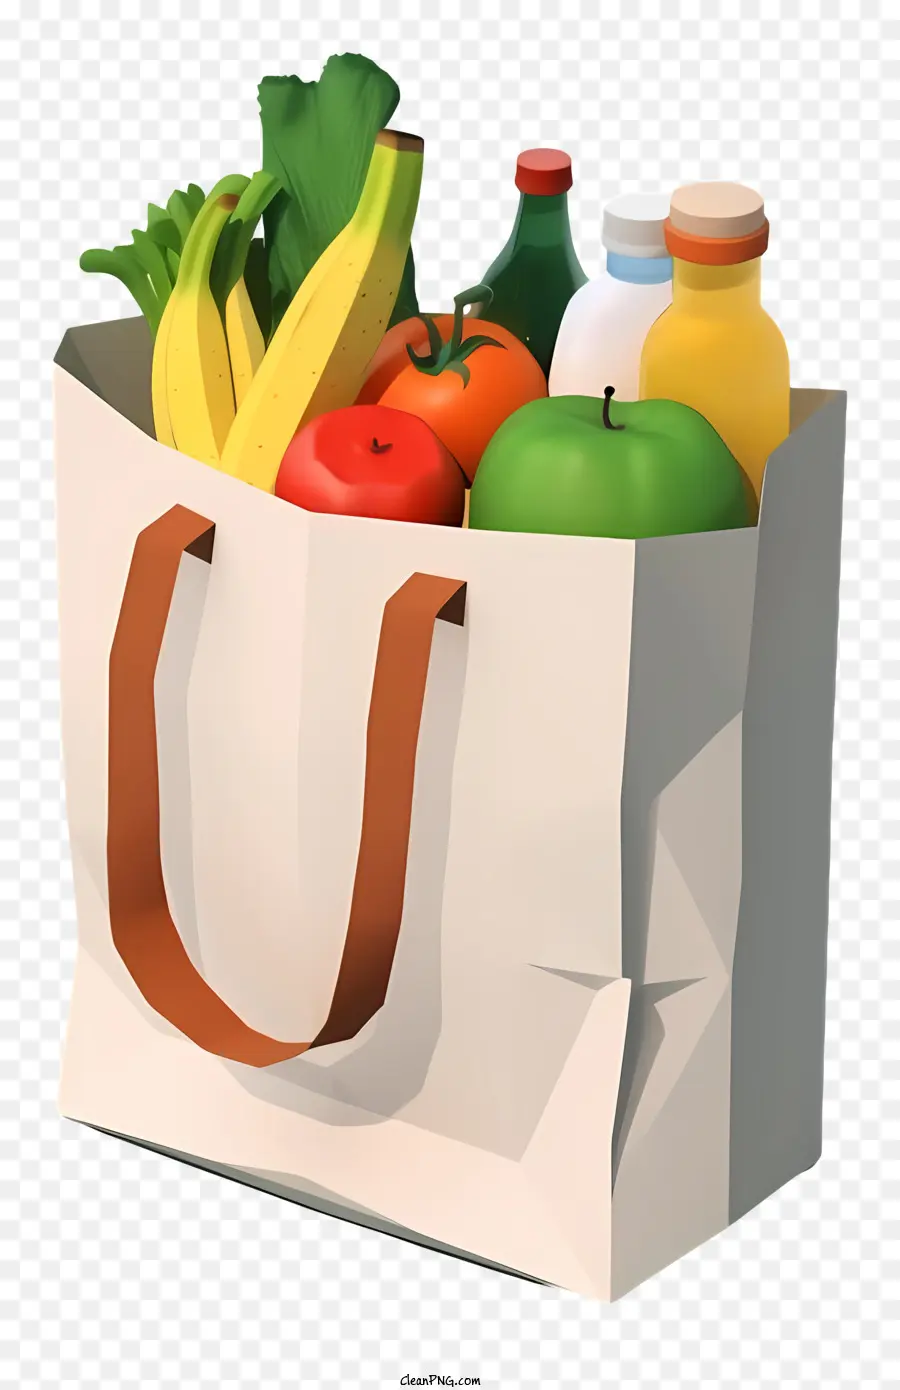 sacchetto - Borsa per la spesa con frutta su sfondo nero